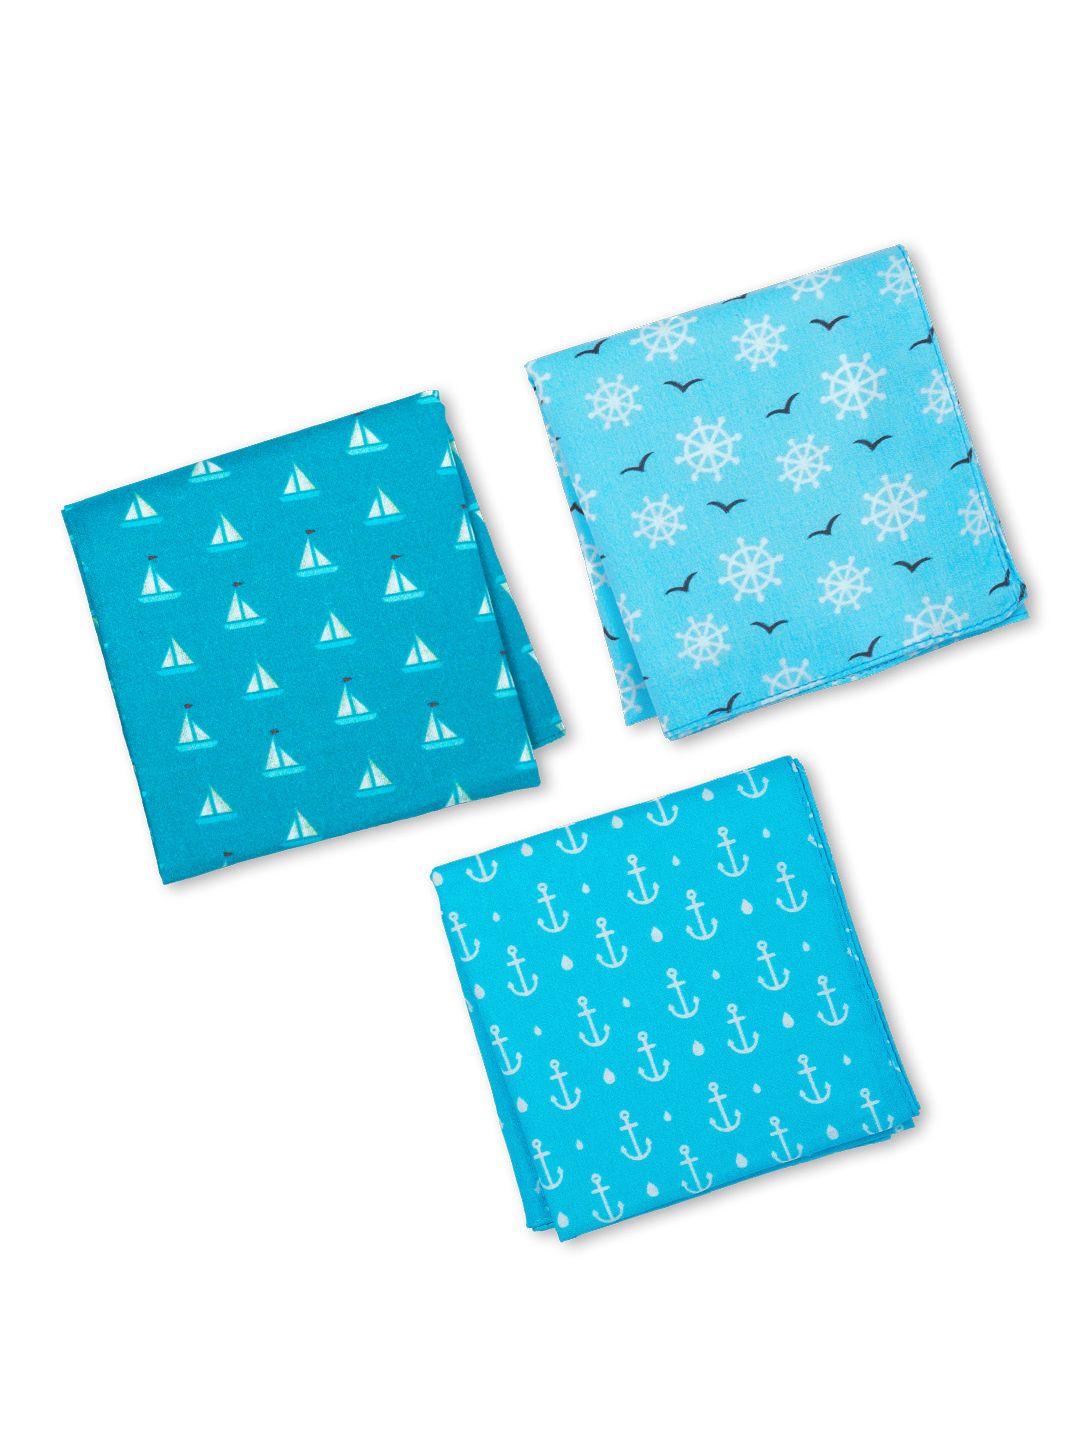 hexafun men pack of 3 blue printed pure organic cotton handkerchiefs